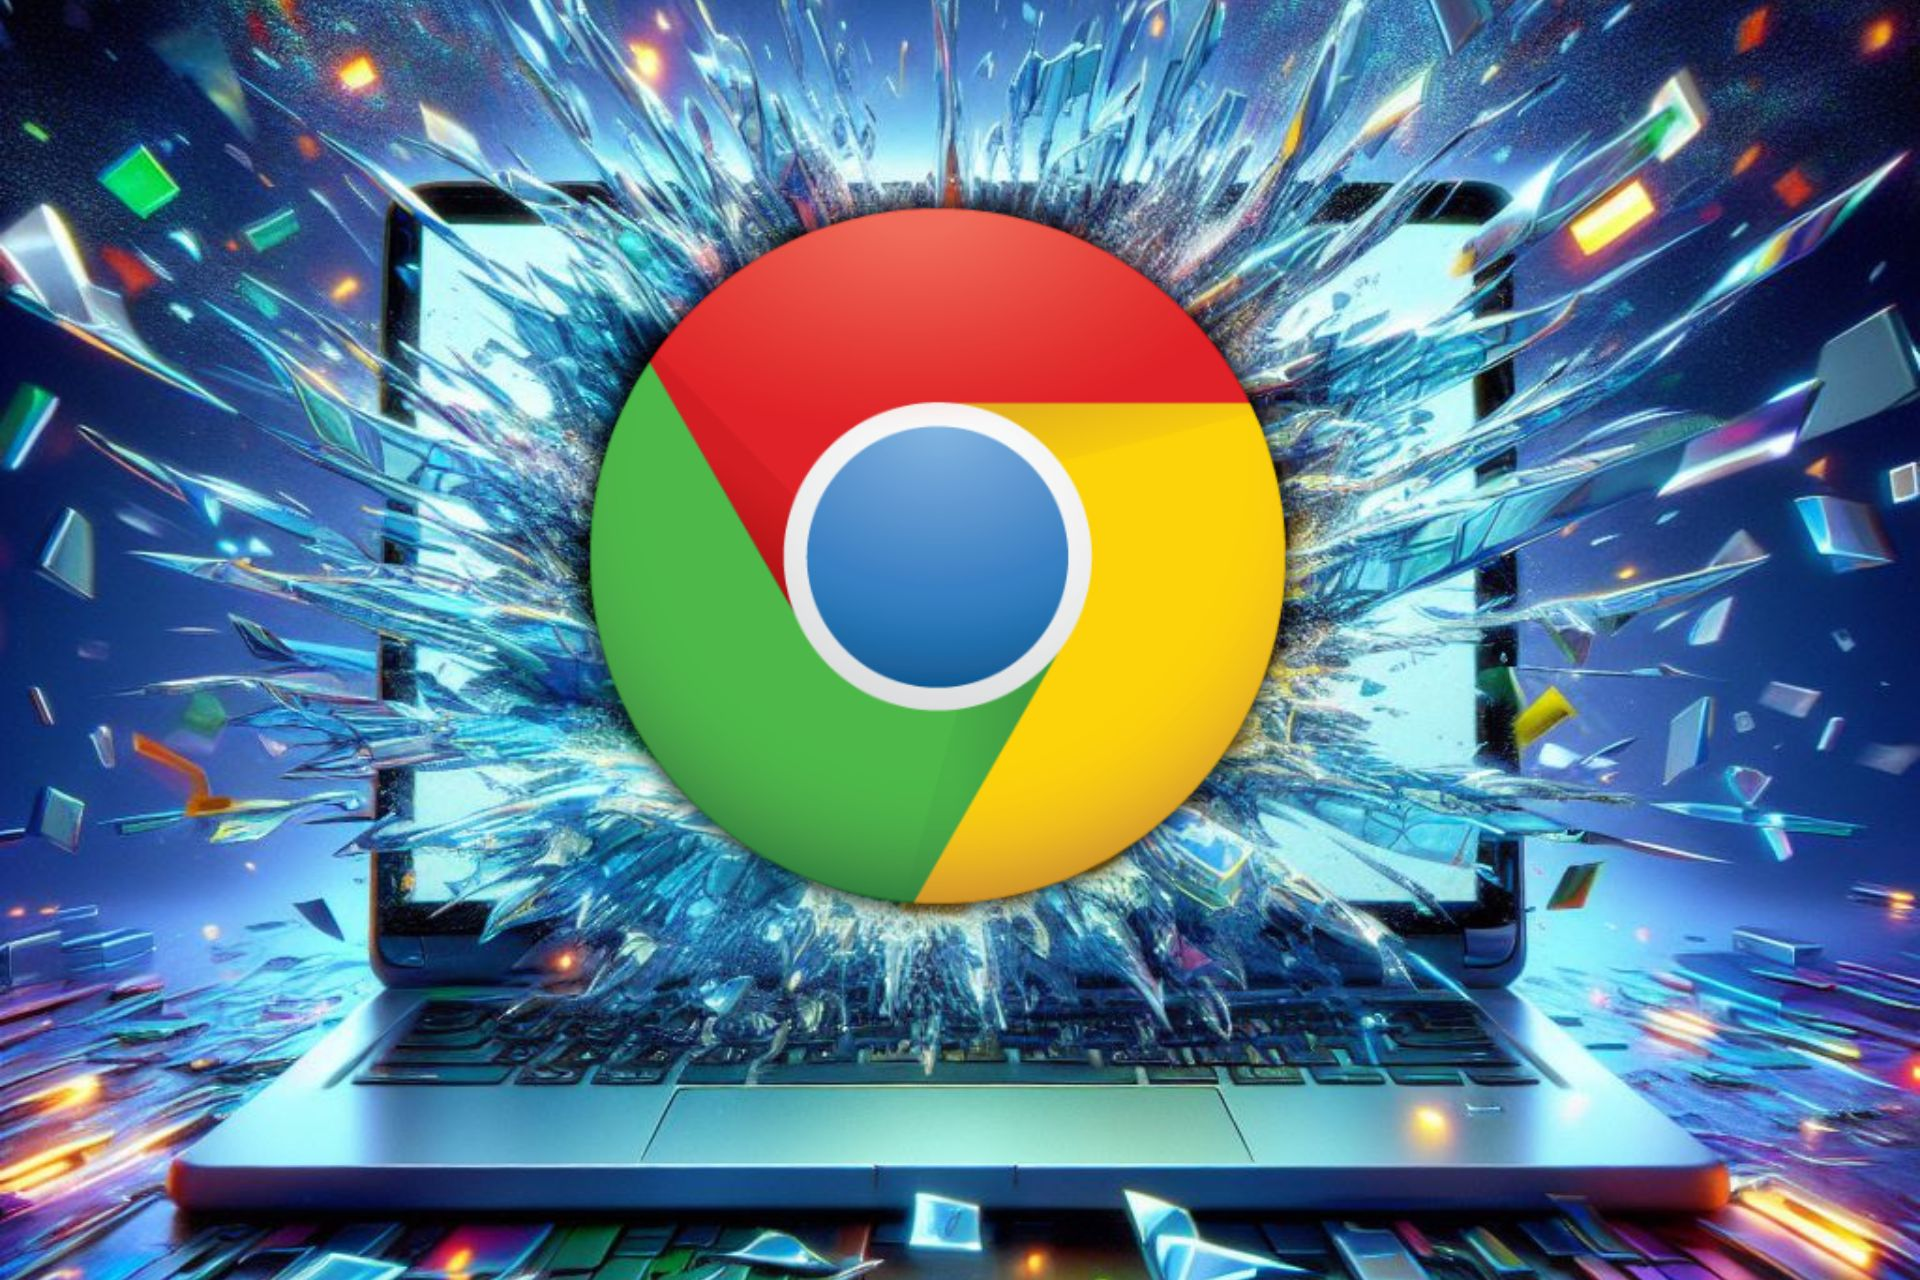 Chrome using Lacros to break free from ChromeOS